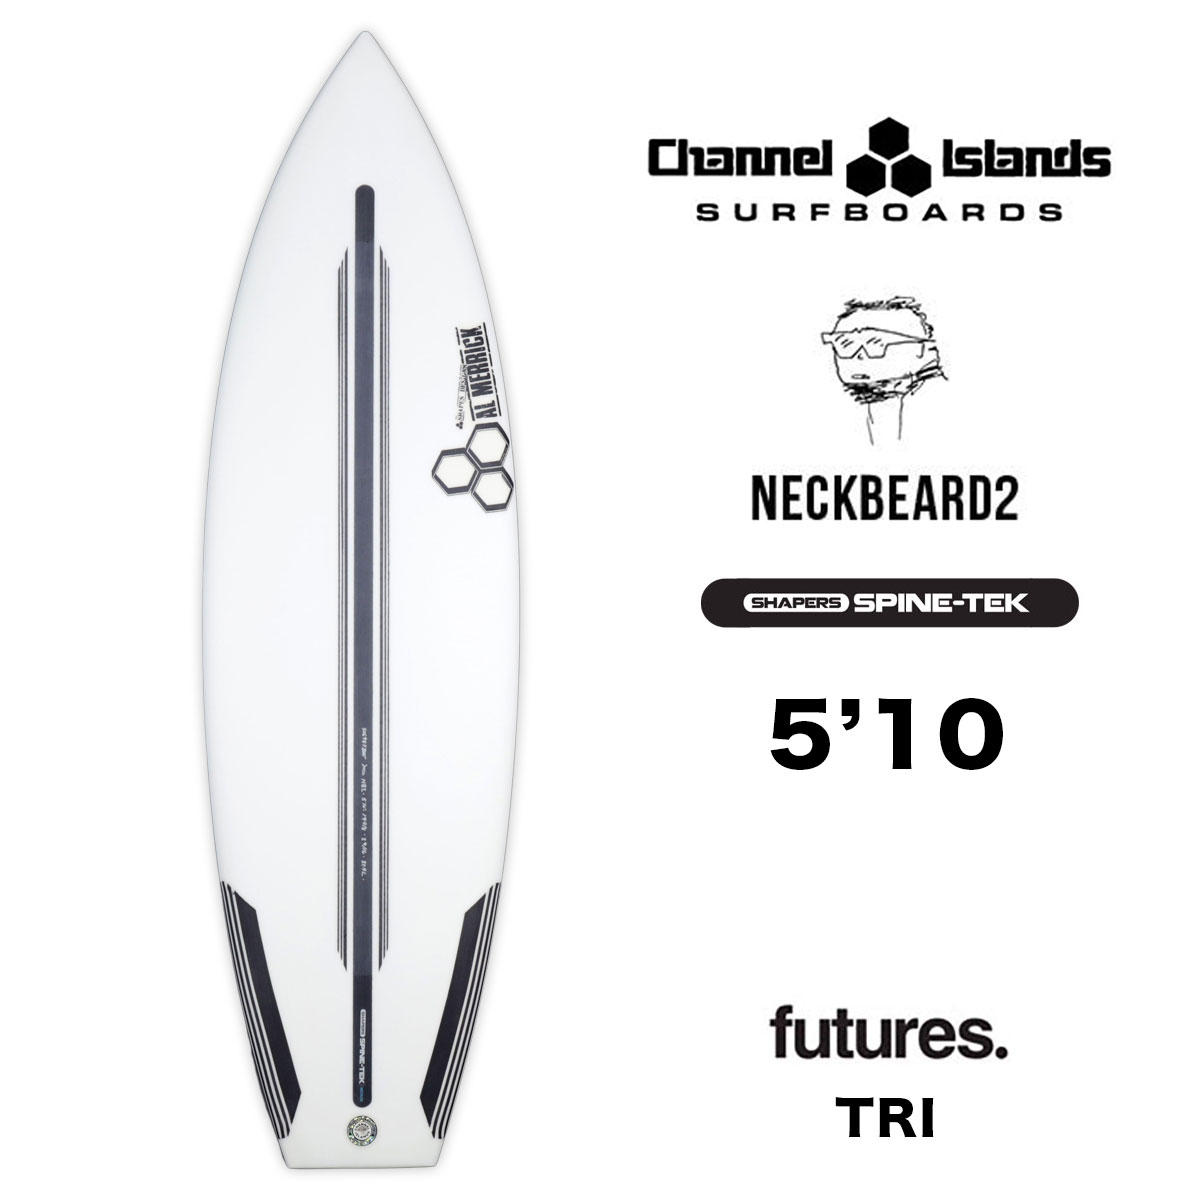 チャンネルアイランド 5.10 ネックベアード2 スパインテック サーフボード ショートボード フューチャー 即納 Channel Islands  NeckBeard2 FUTURES【506987-22】-ジャックオーシャンスポーツ